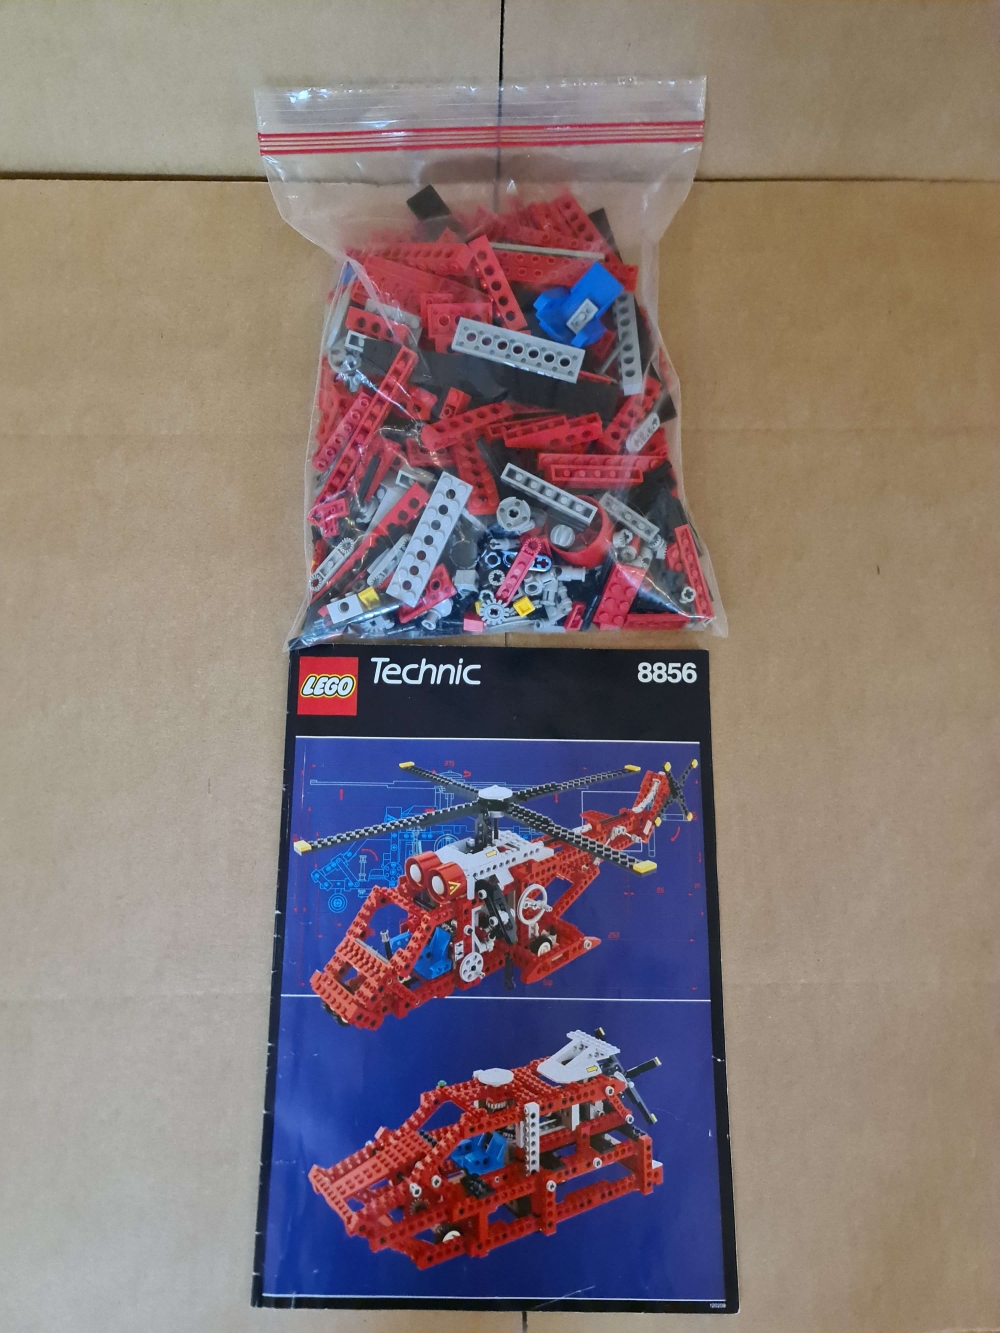 Sett 8856 fra Lego Technic serien.
Komplett med manual. Har kun 2 av klistremerkene. Disse kan kjøpes i repro om det ønskes.